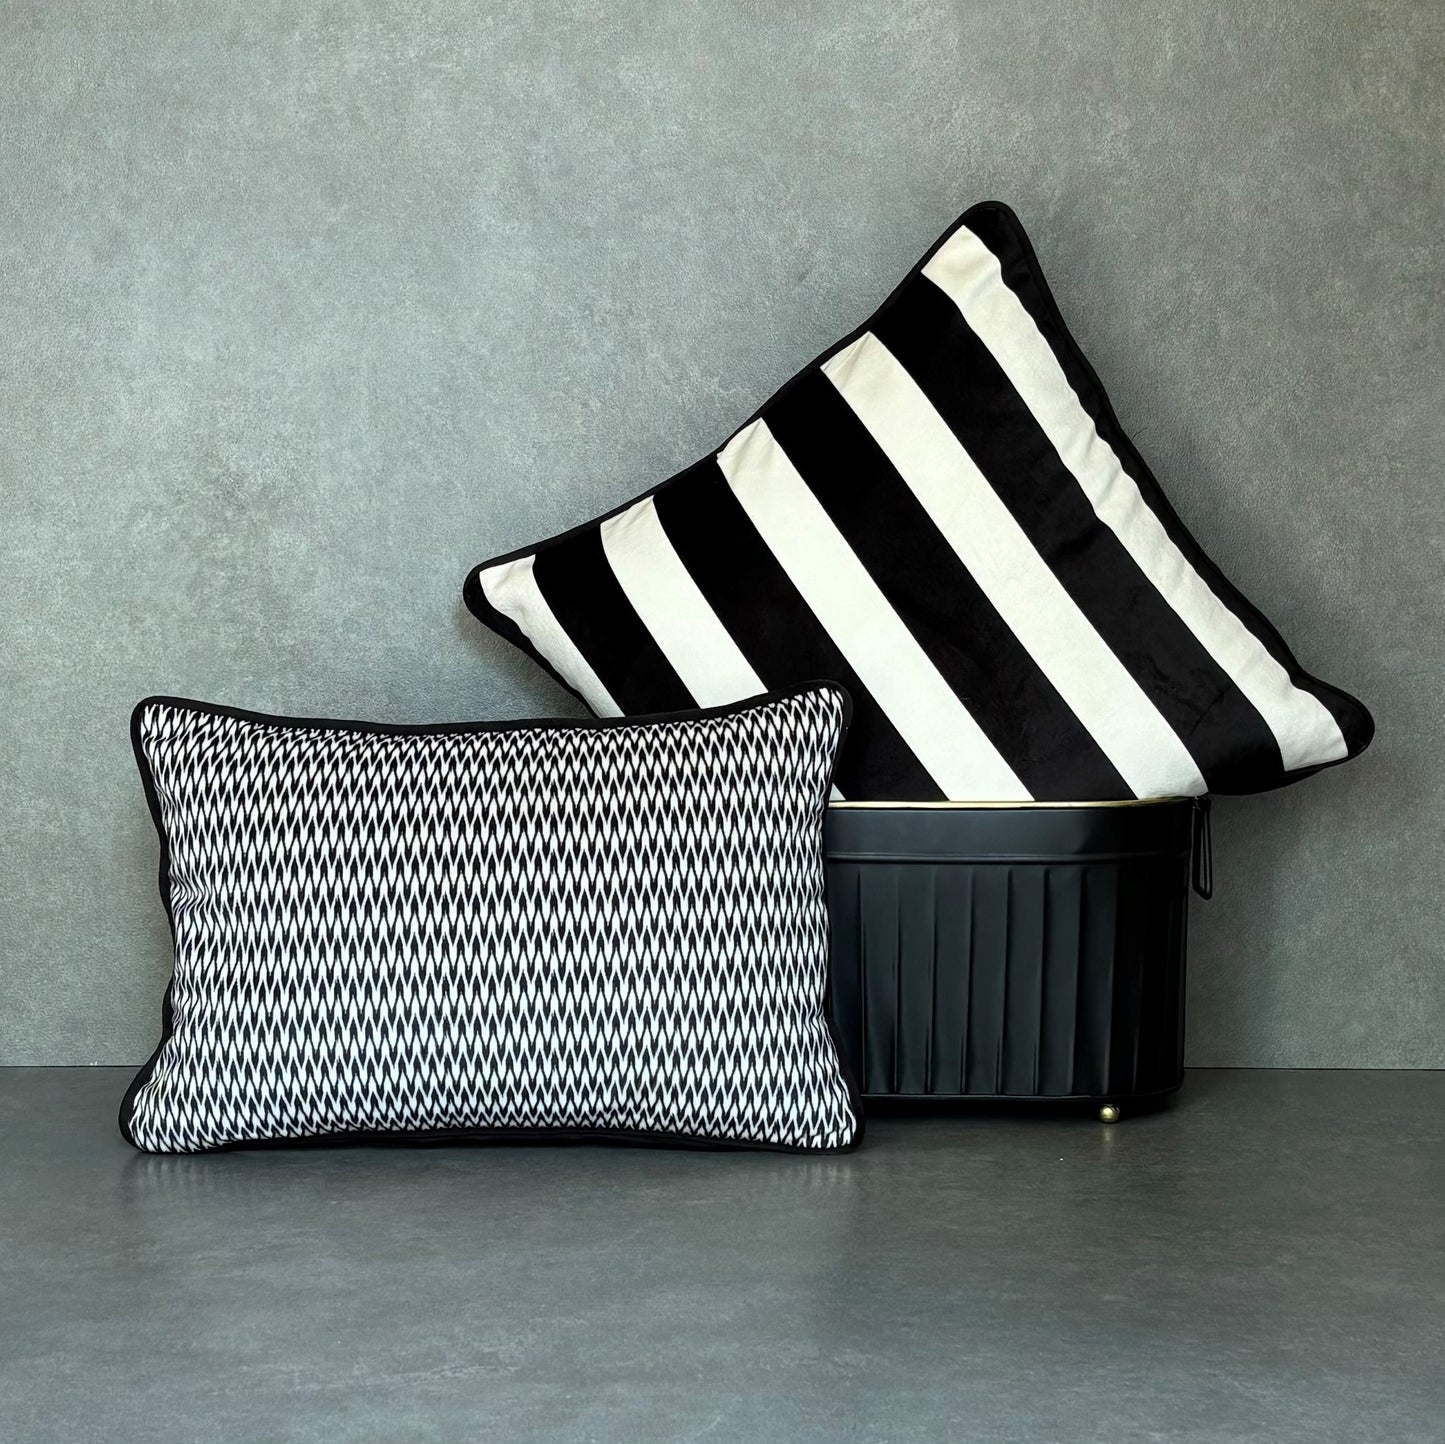 Black And White Velvet Cushion Cover 12 x 18